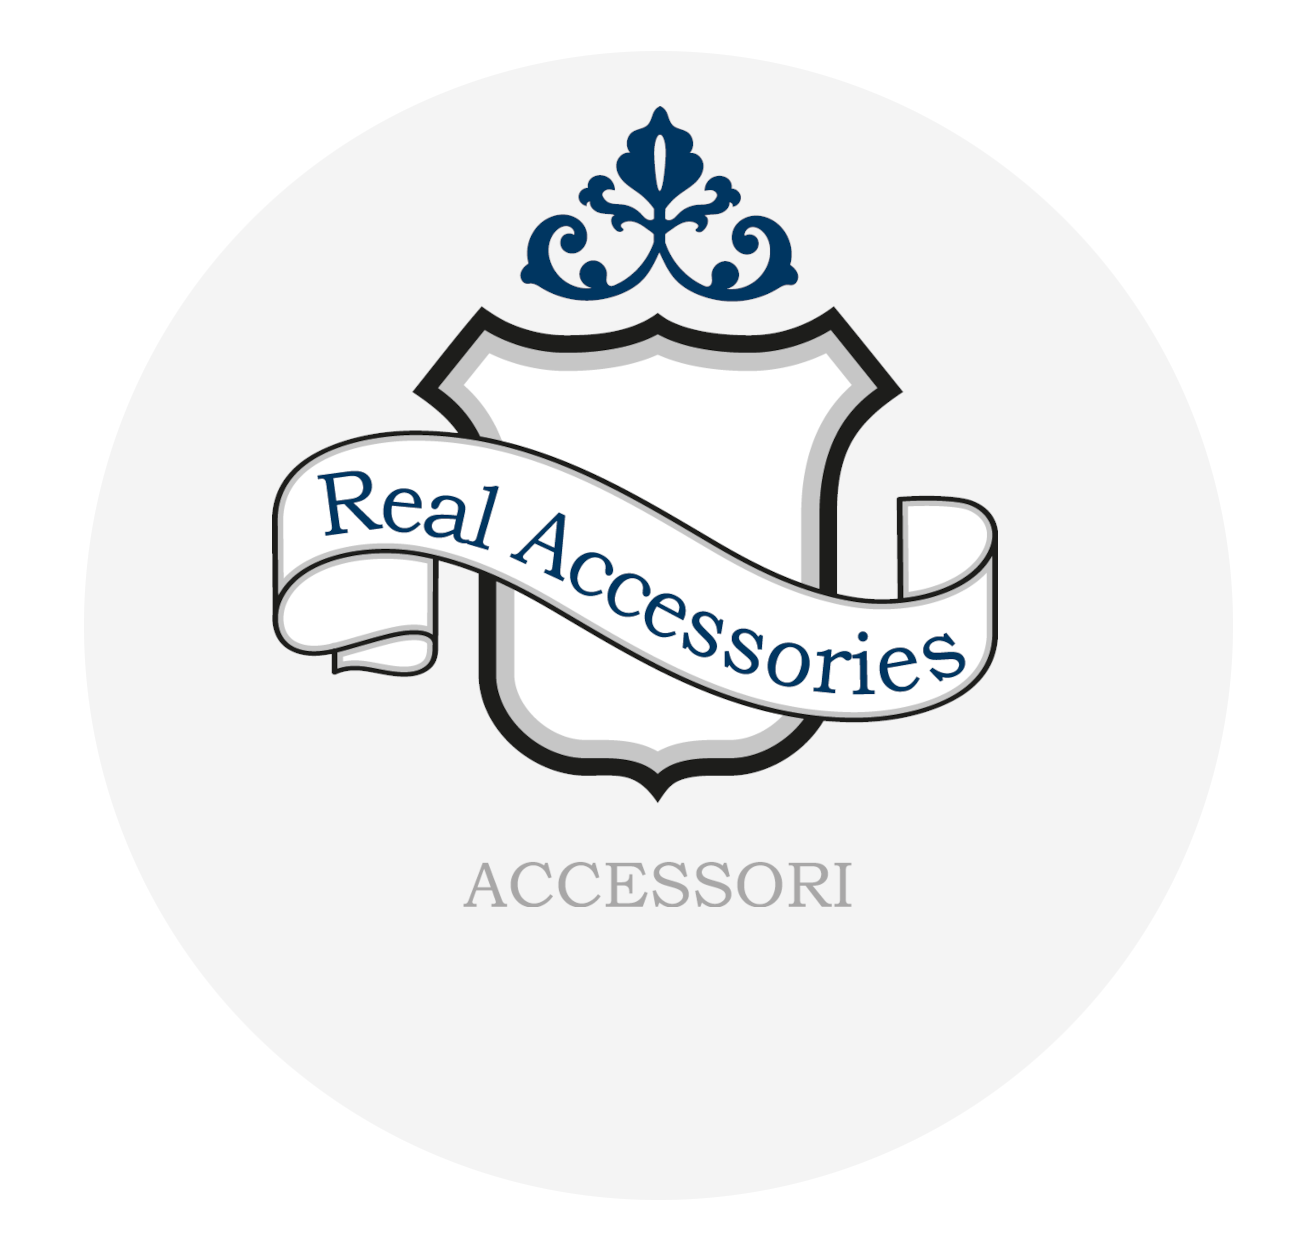 Real Accessories - Accessori